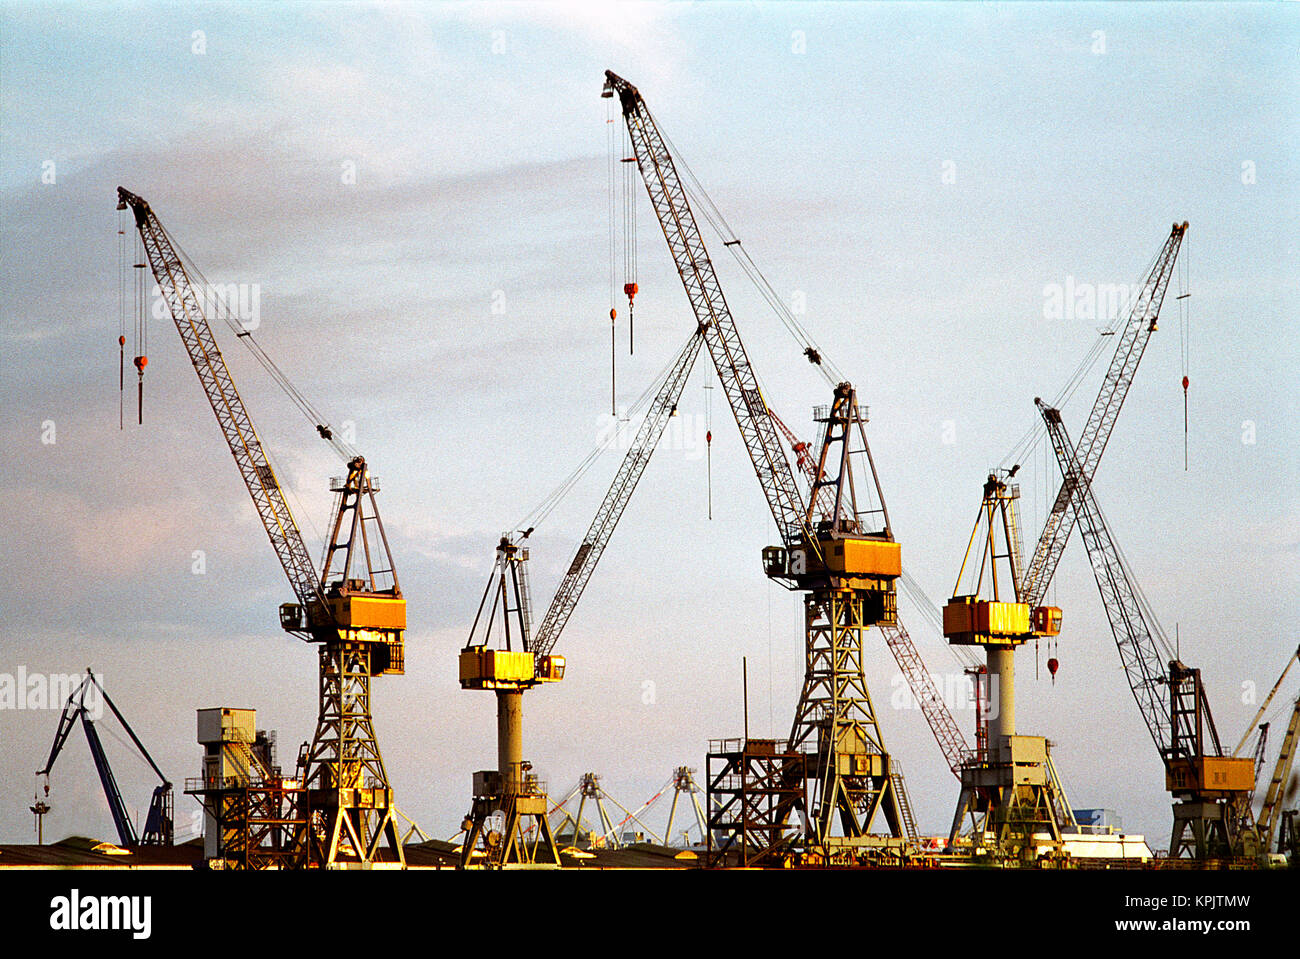 La réparation de grues de chantier naval de Hambourg Blohm  + Voss. Sur l'Elbe au St. Pauli Landungsbrücken. Banque D'Images